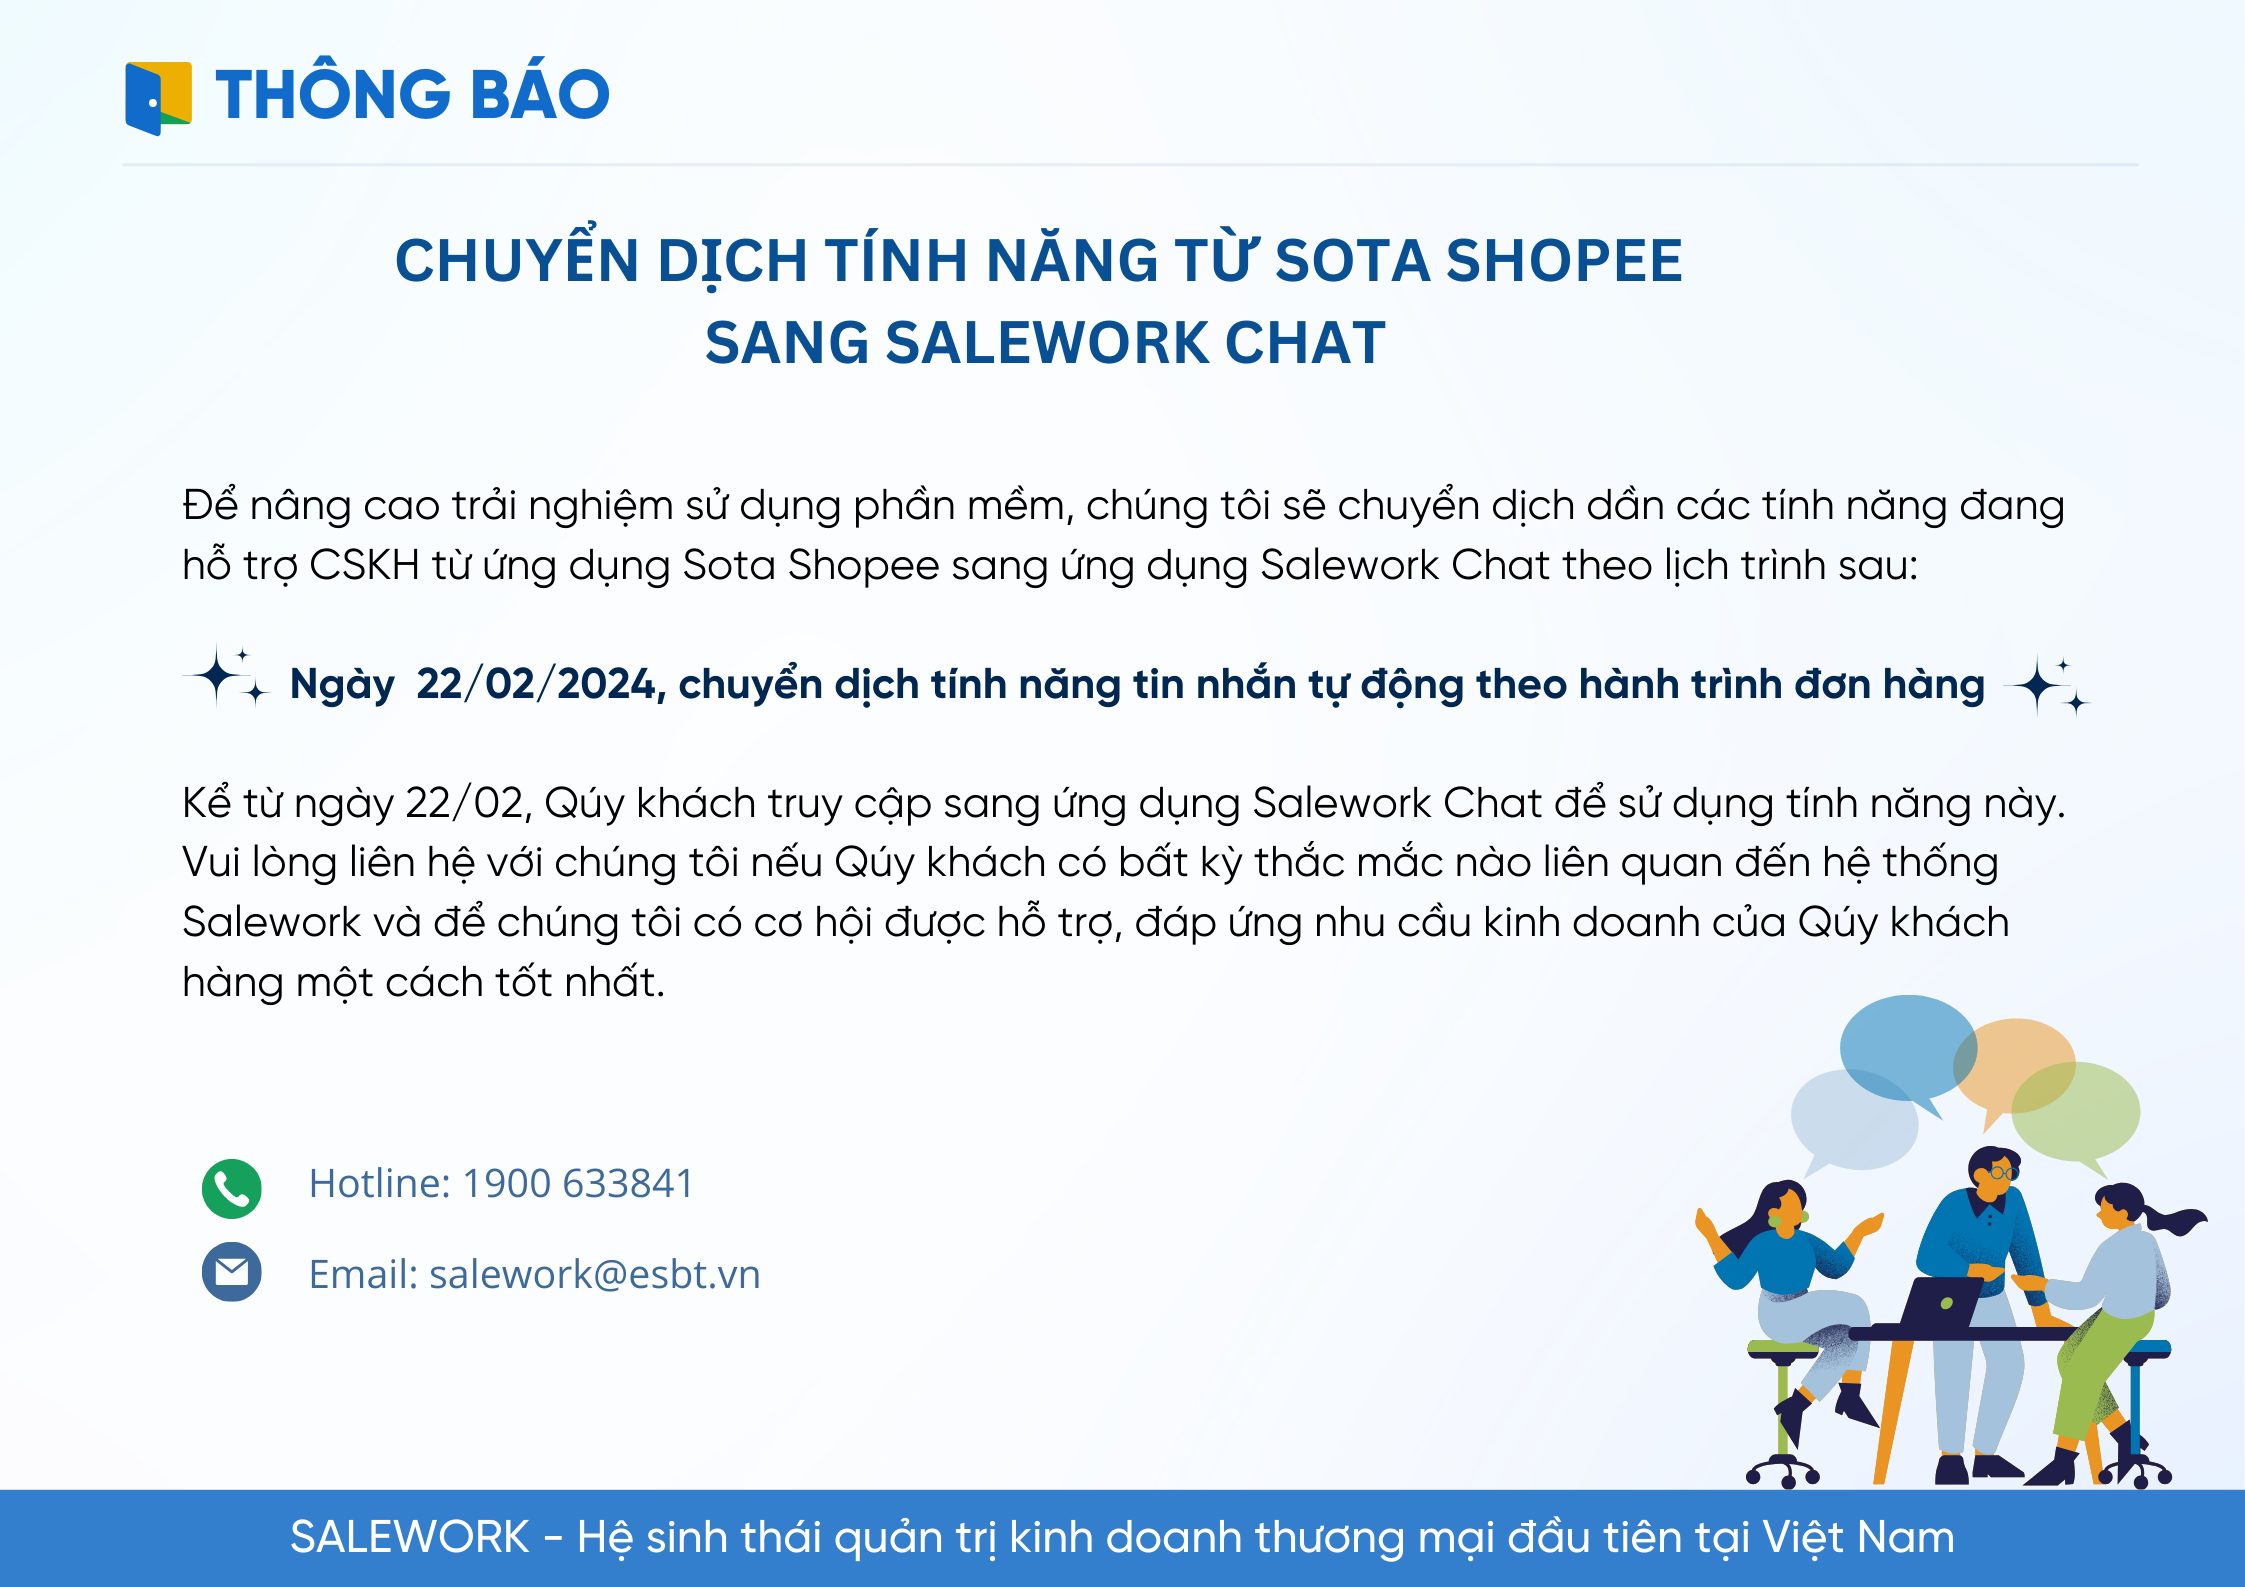 Chuyển dịch tính năng tin nhắn tự động cho sàn Shopee sang ứng dụng Salework Chat - 7